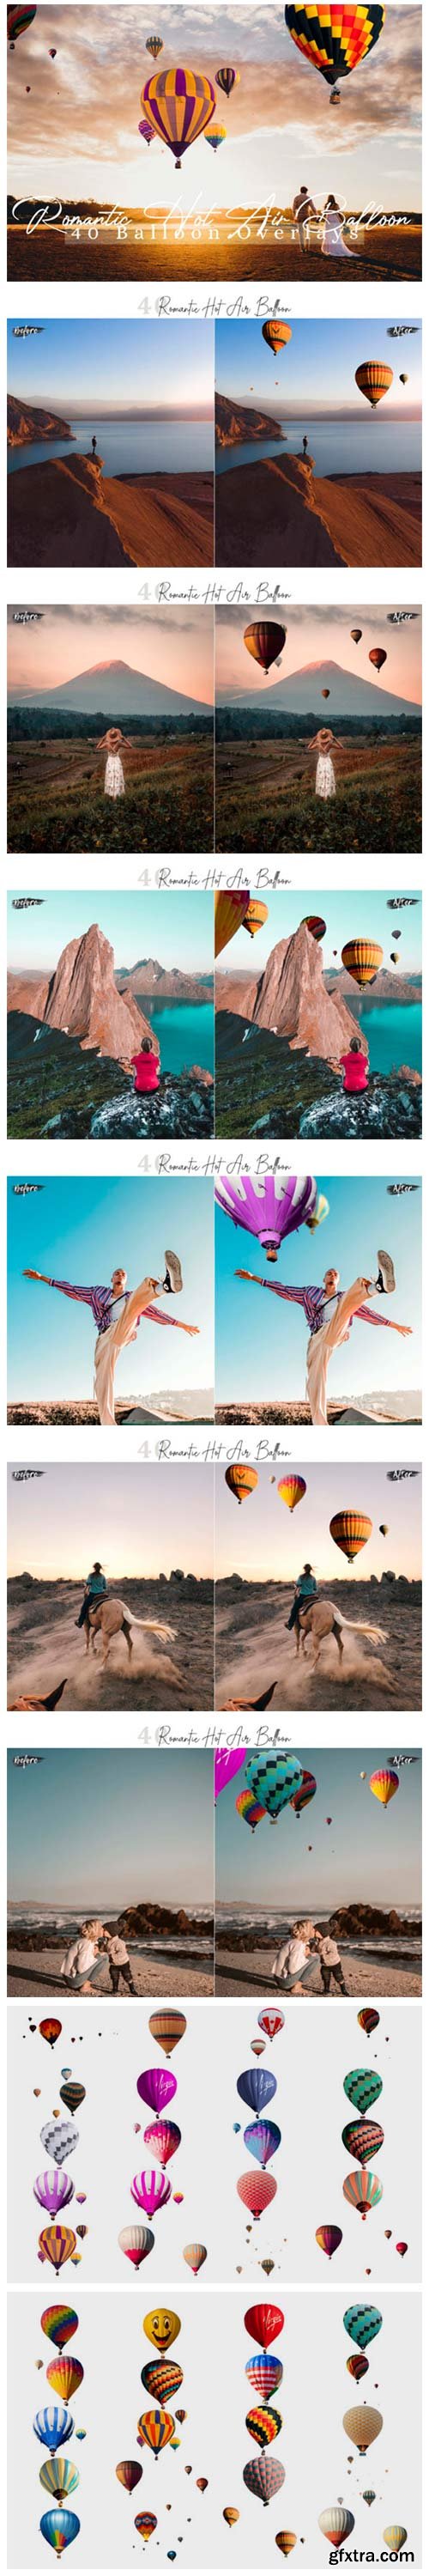 40 Romantic Hot Air Balloon Overlays 4061993